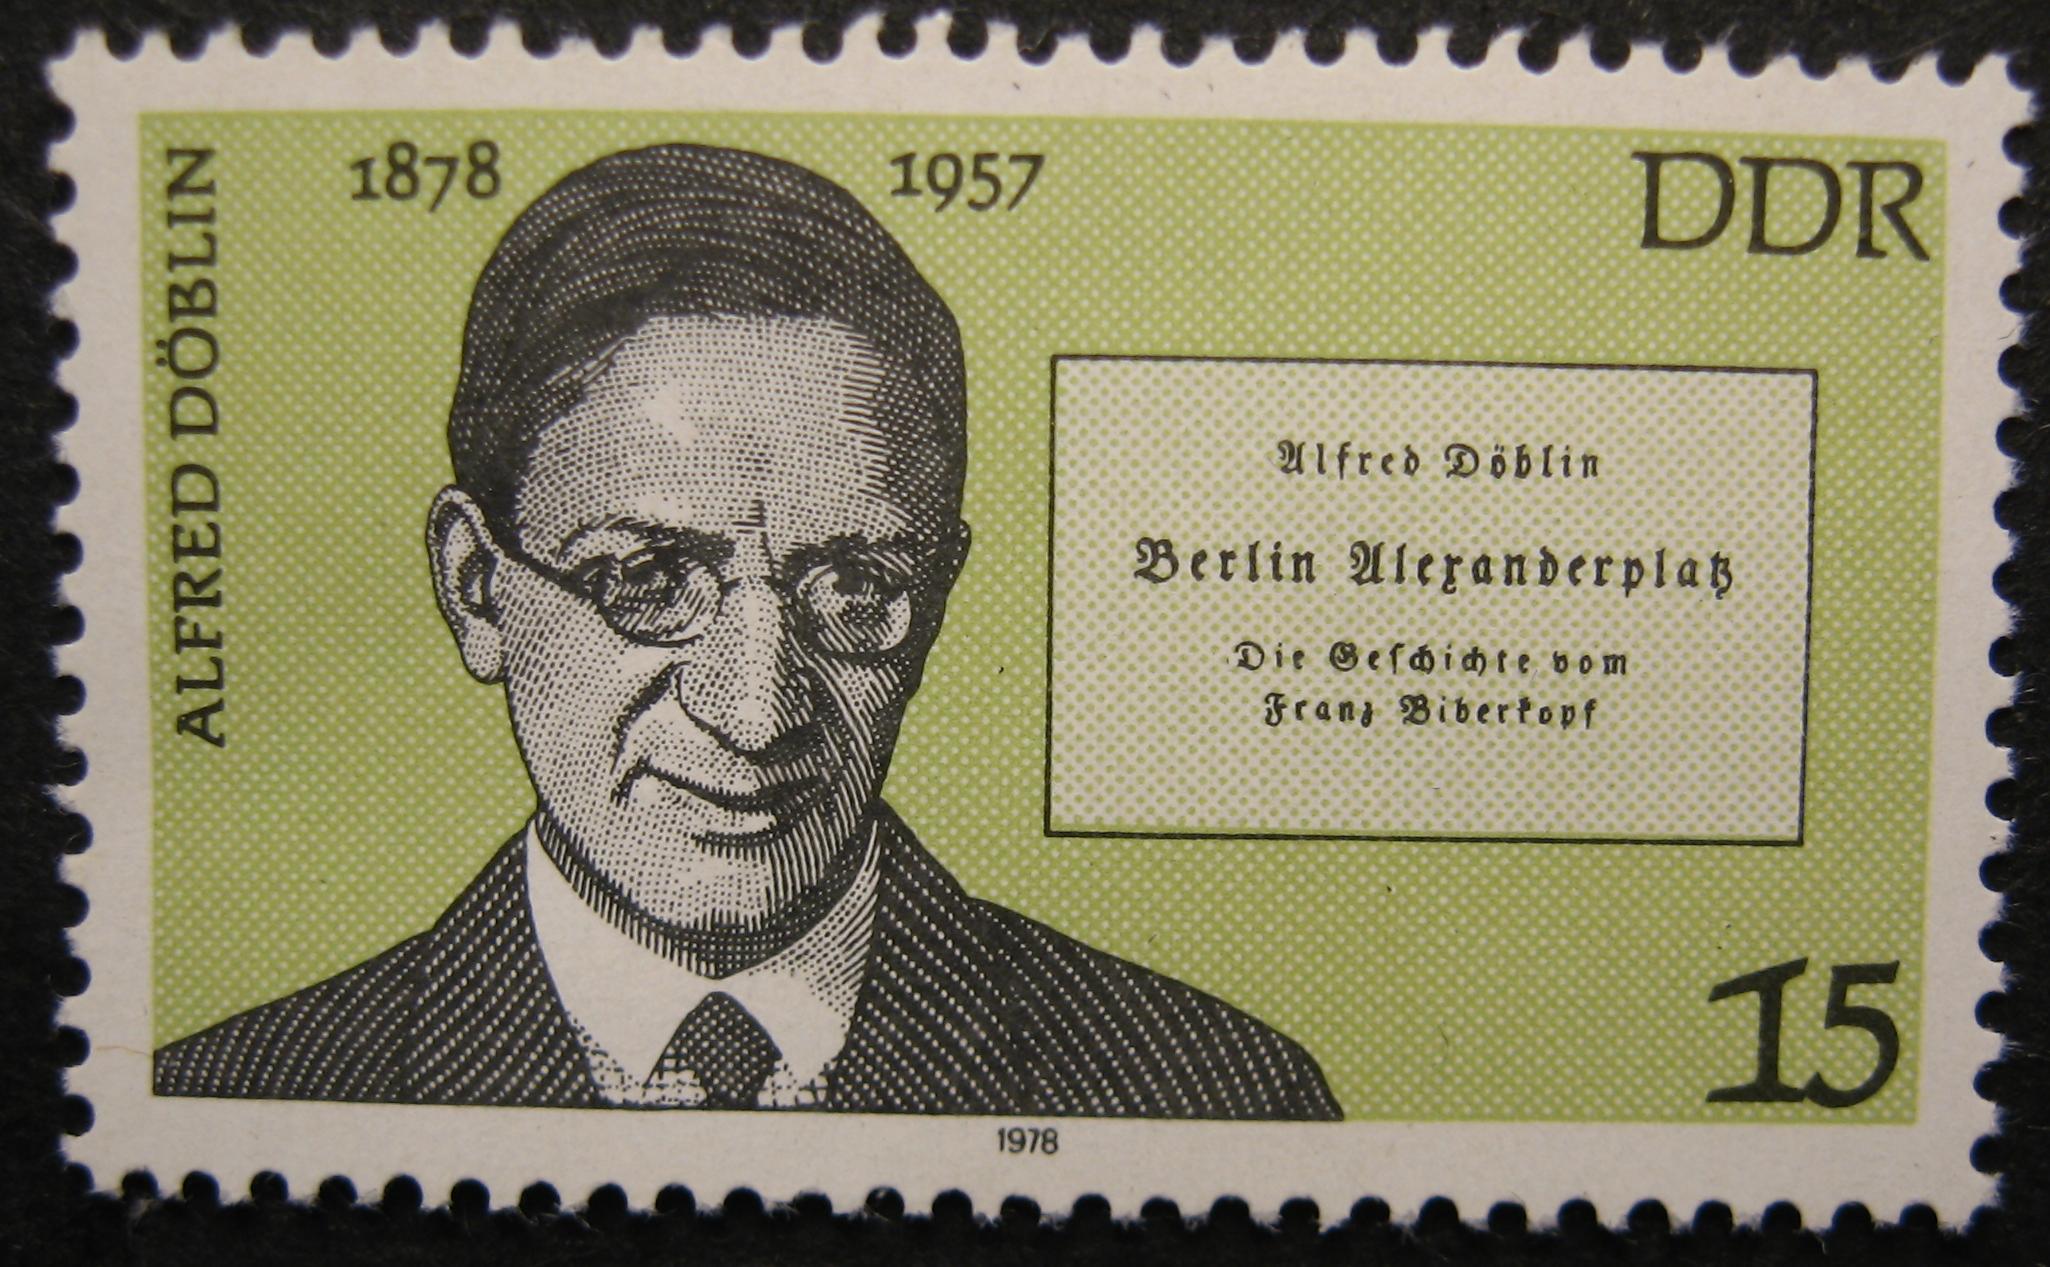 Rostro de Alfred Döblin nun selo postal